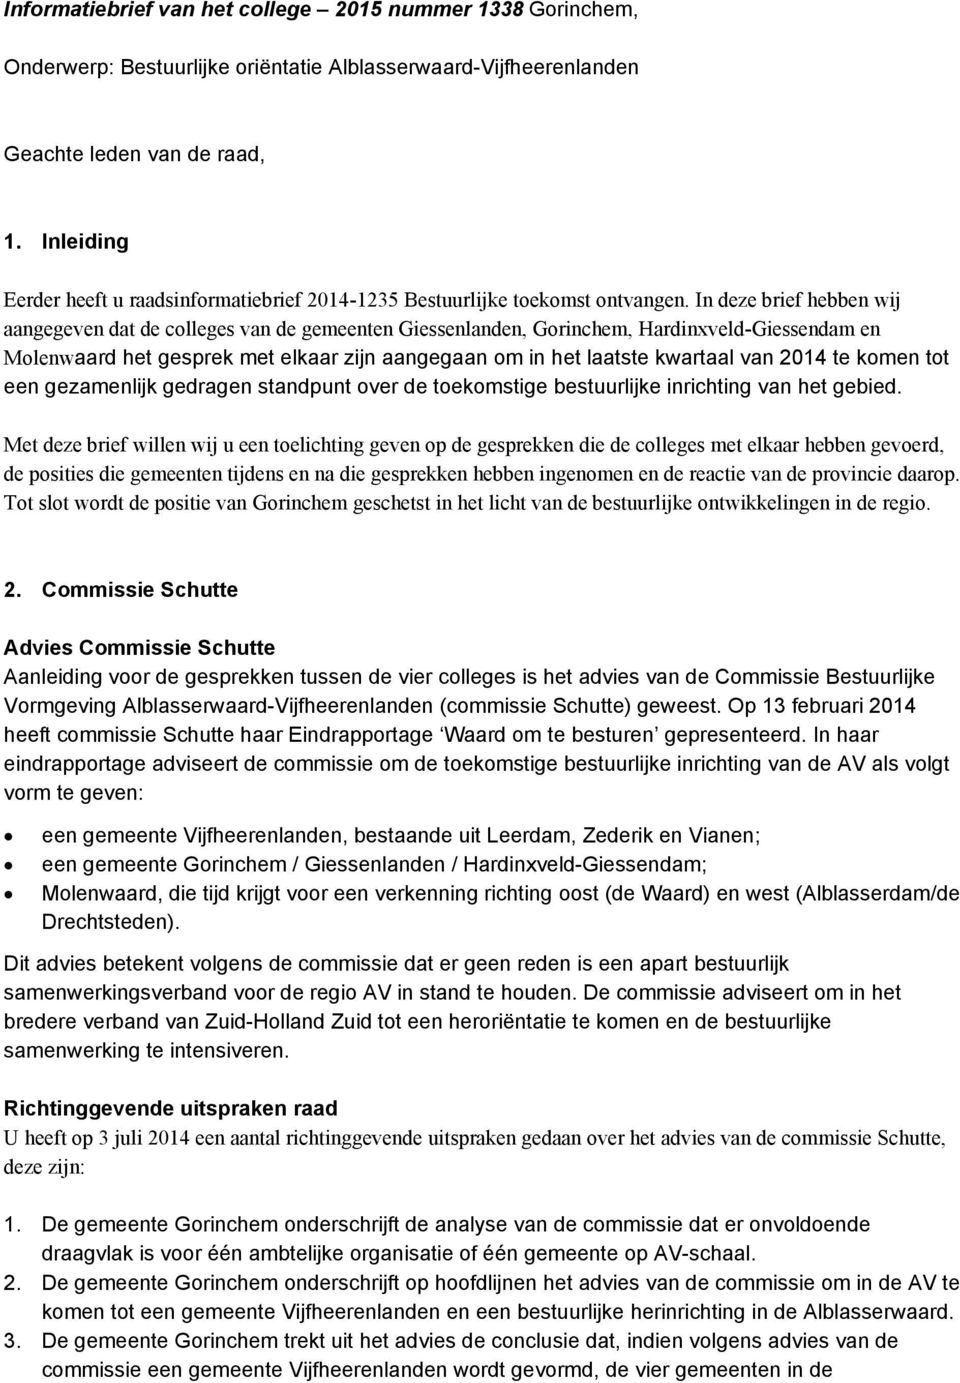 In deze brief hebben wij aangegeven dat de colleges van de gemeenten Giessenlanden, Gorinchem, Hardinxveld-Giessendam en Molenwaard het gesprek met elkaar zijn aangegaan om in het laatste kwartaal